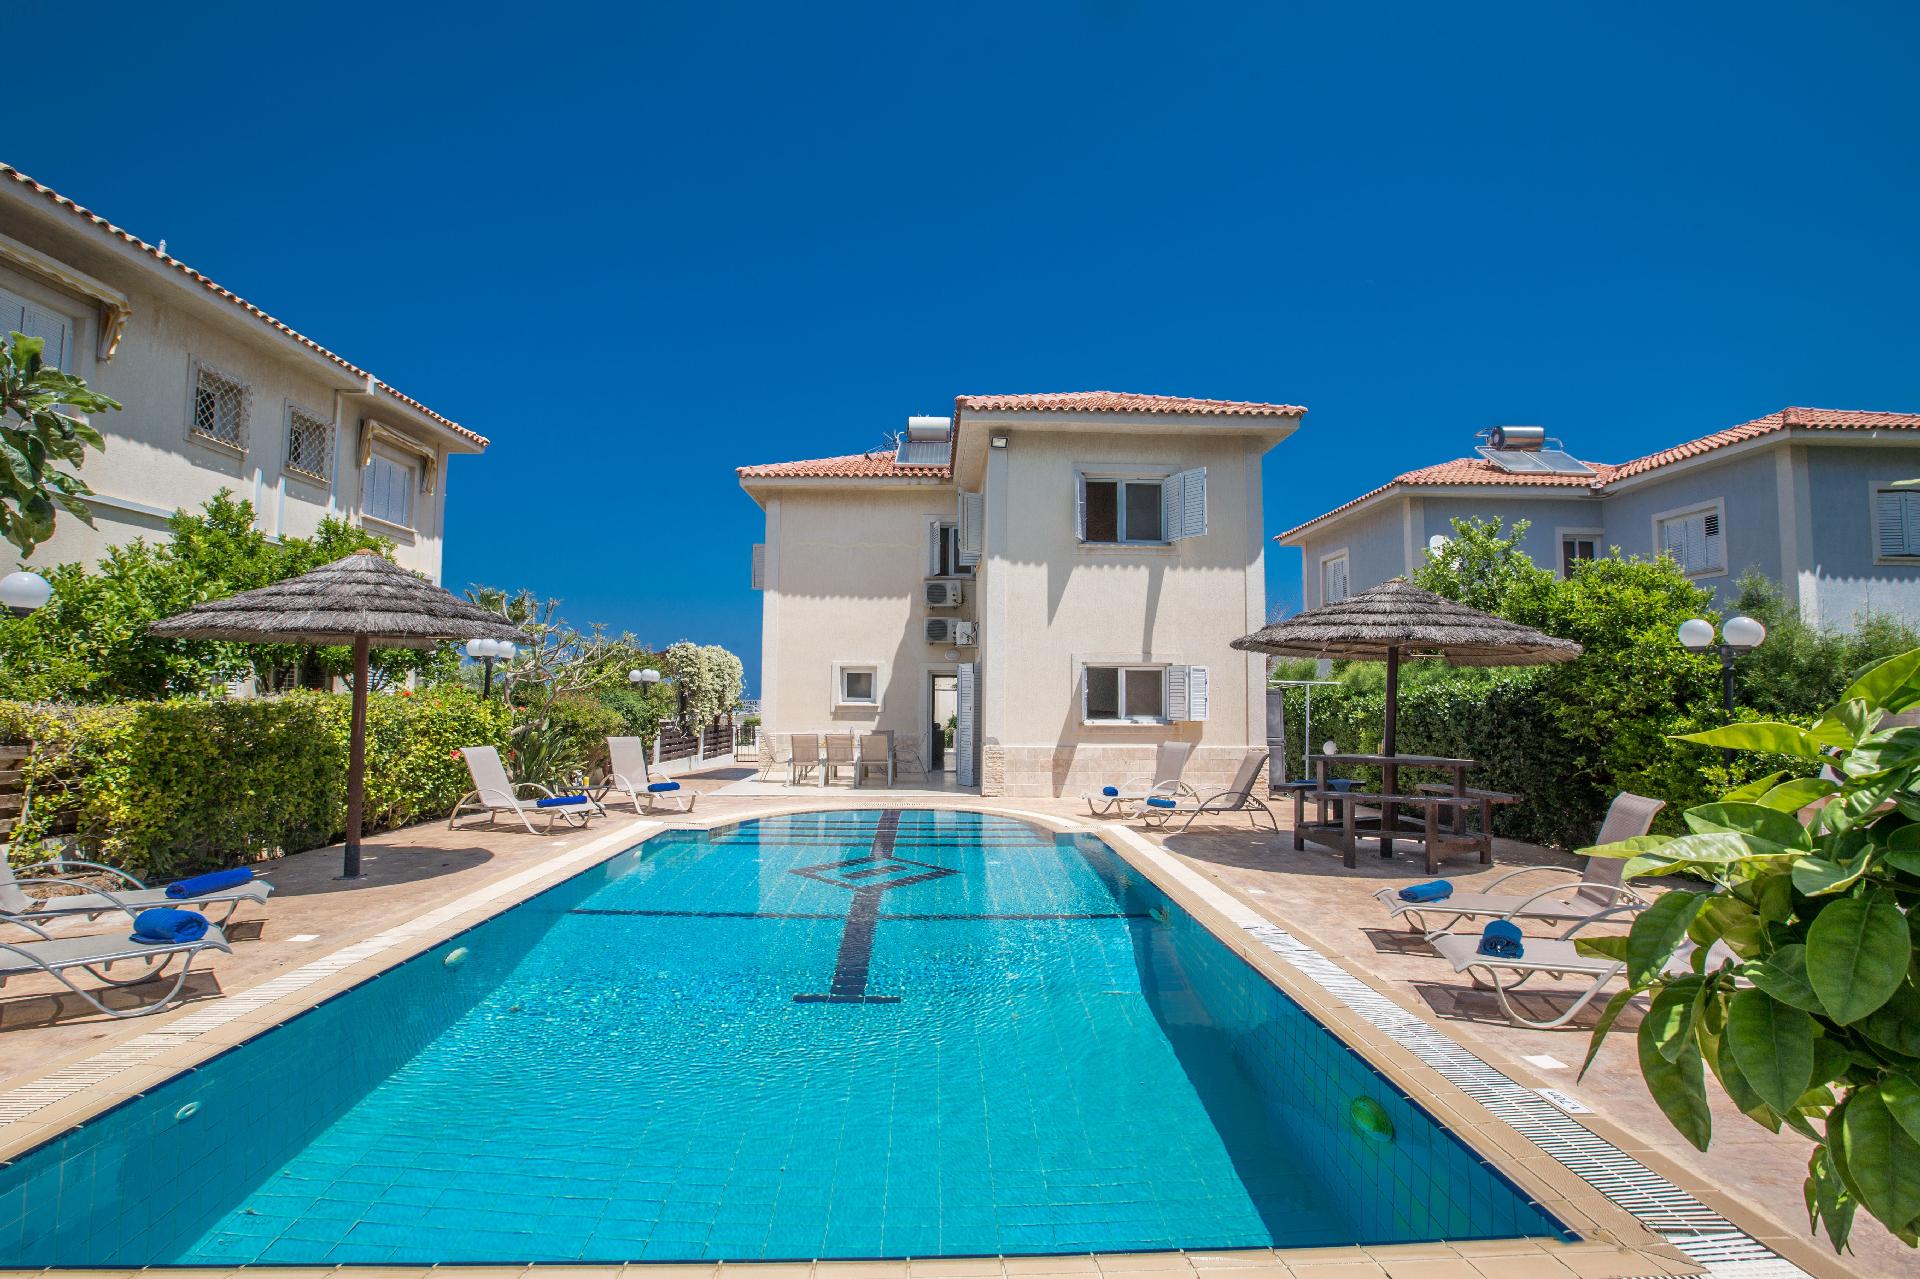 Ferienhaus mit Privatpool für 9 Personen ca.  Ferienhaus in Zypern